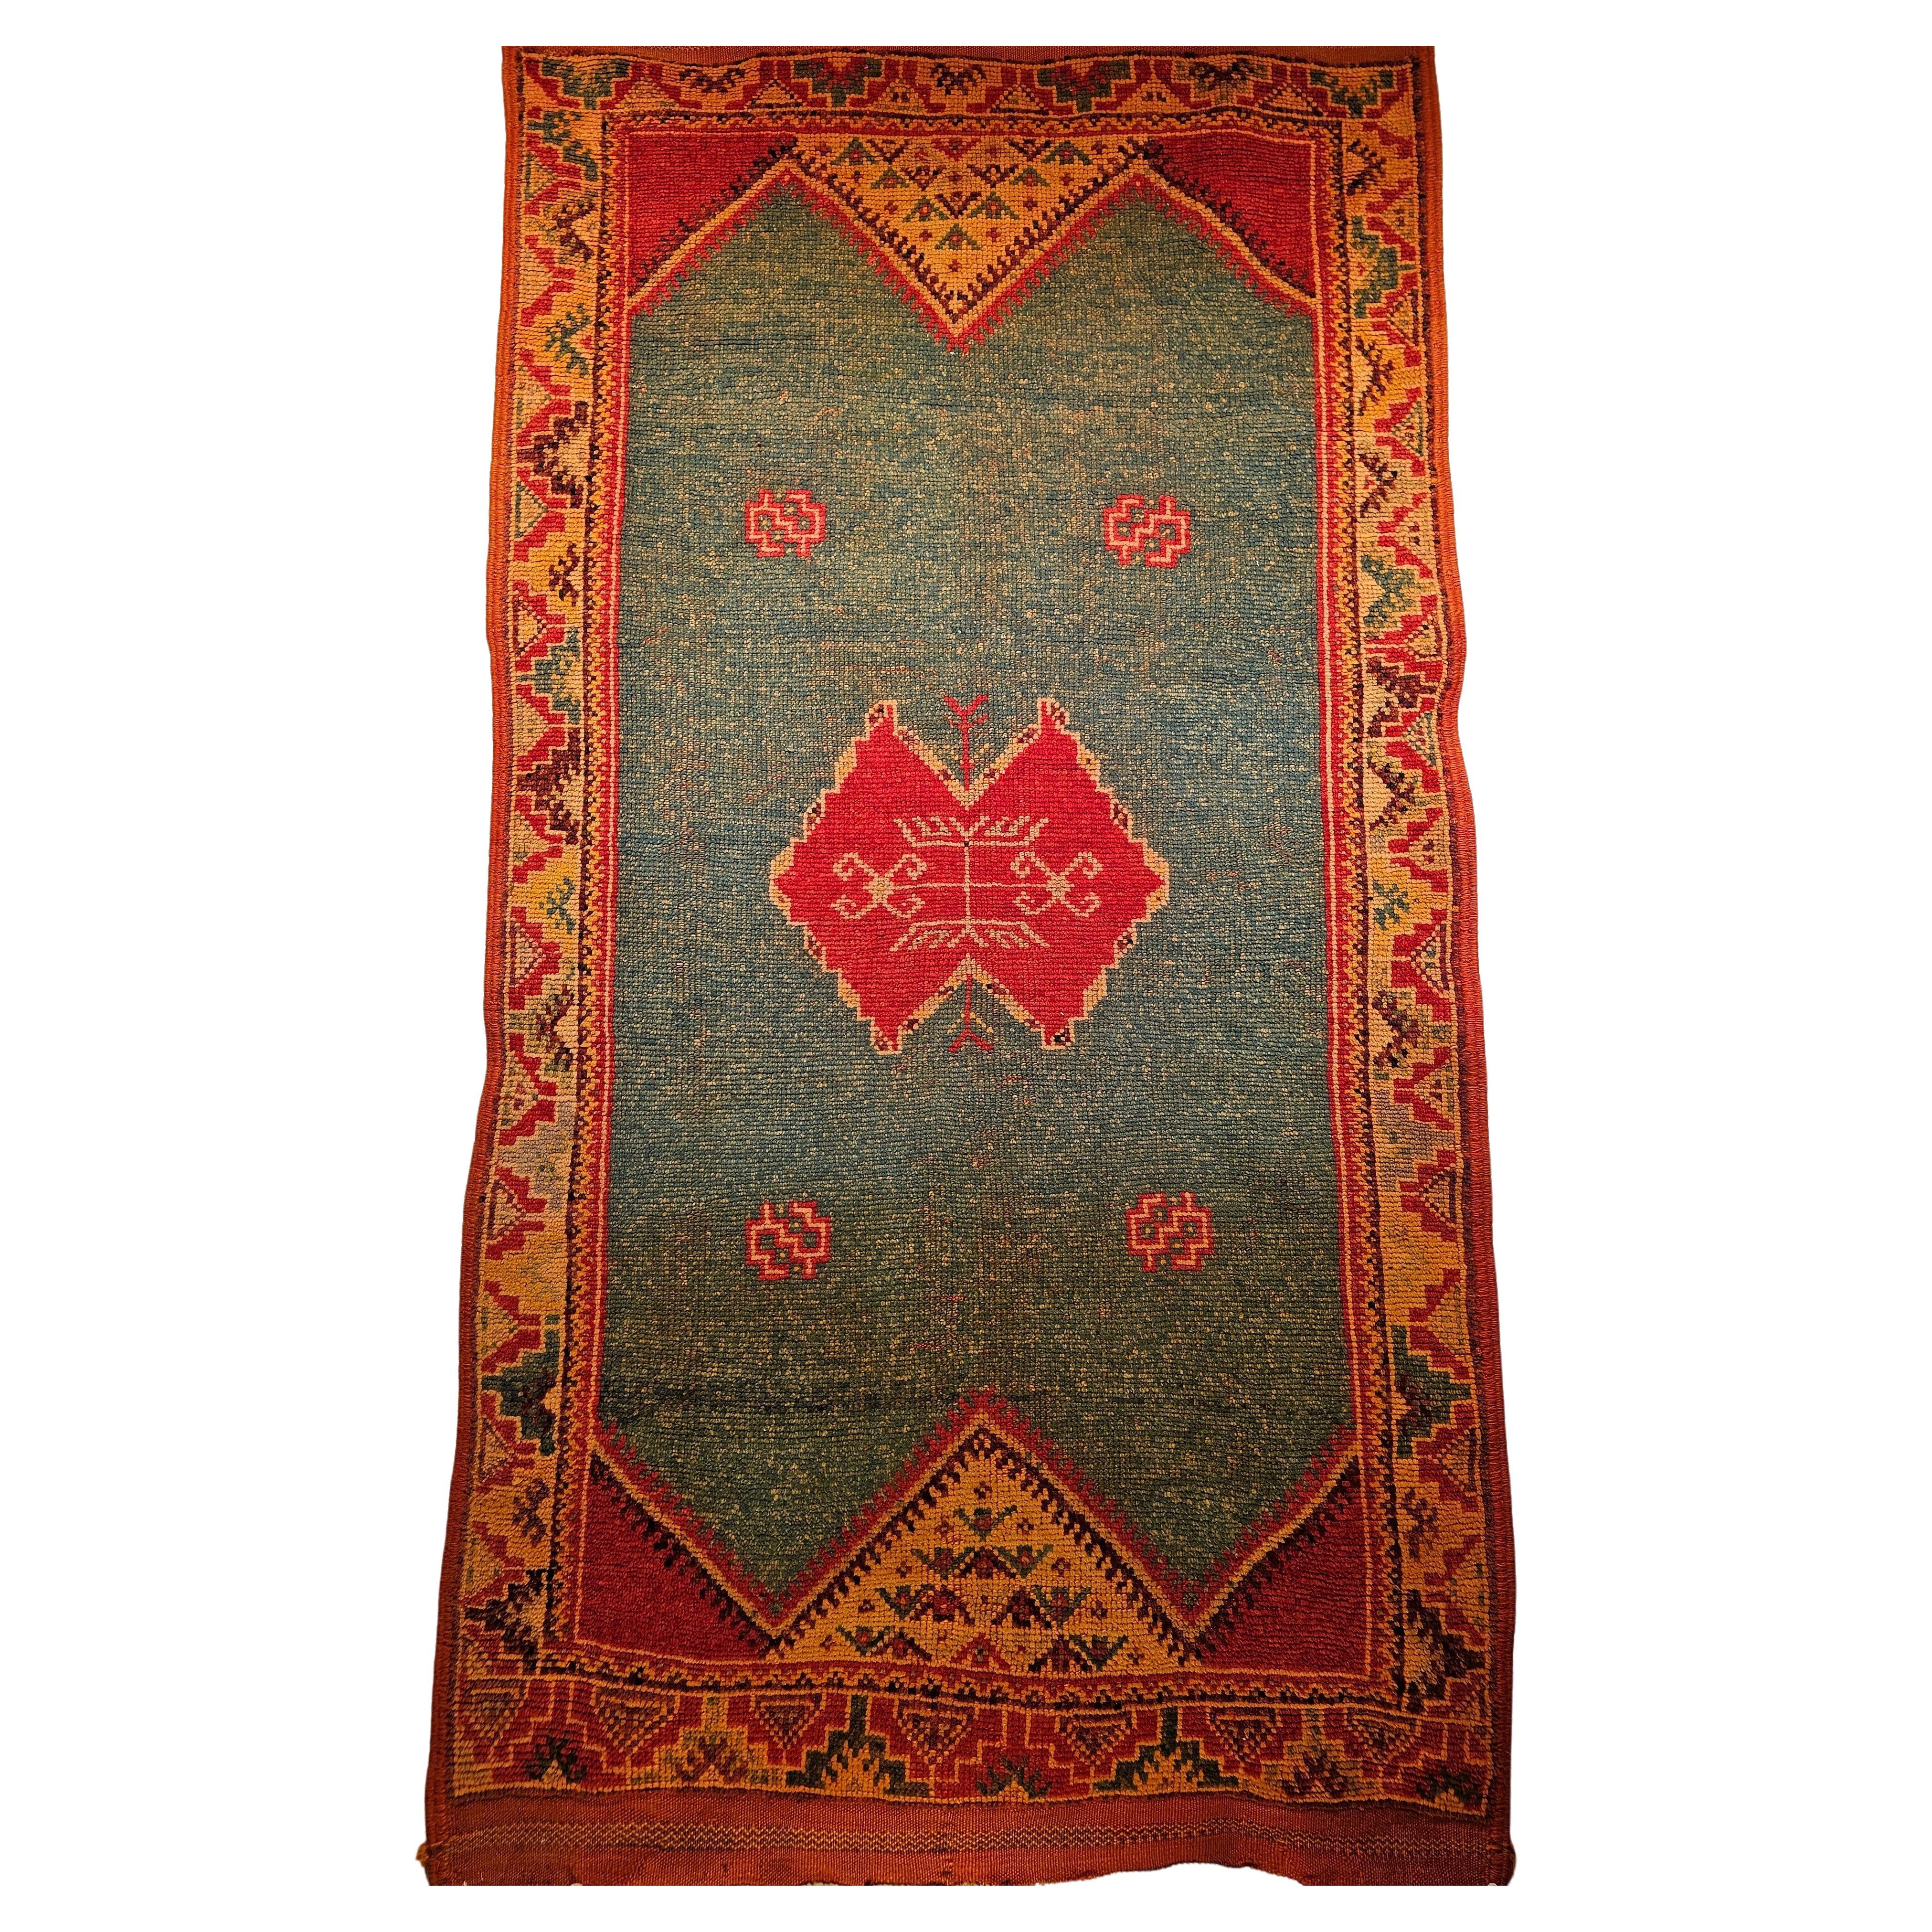 Marokkanischer Vintage-Teppich mit geometrischem Muster in Hellgrün, Gelb, Rot und Braun